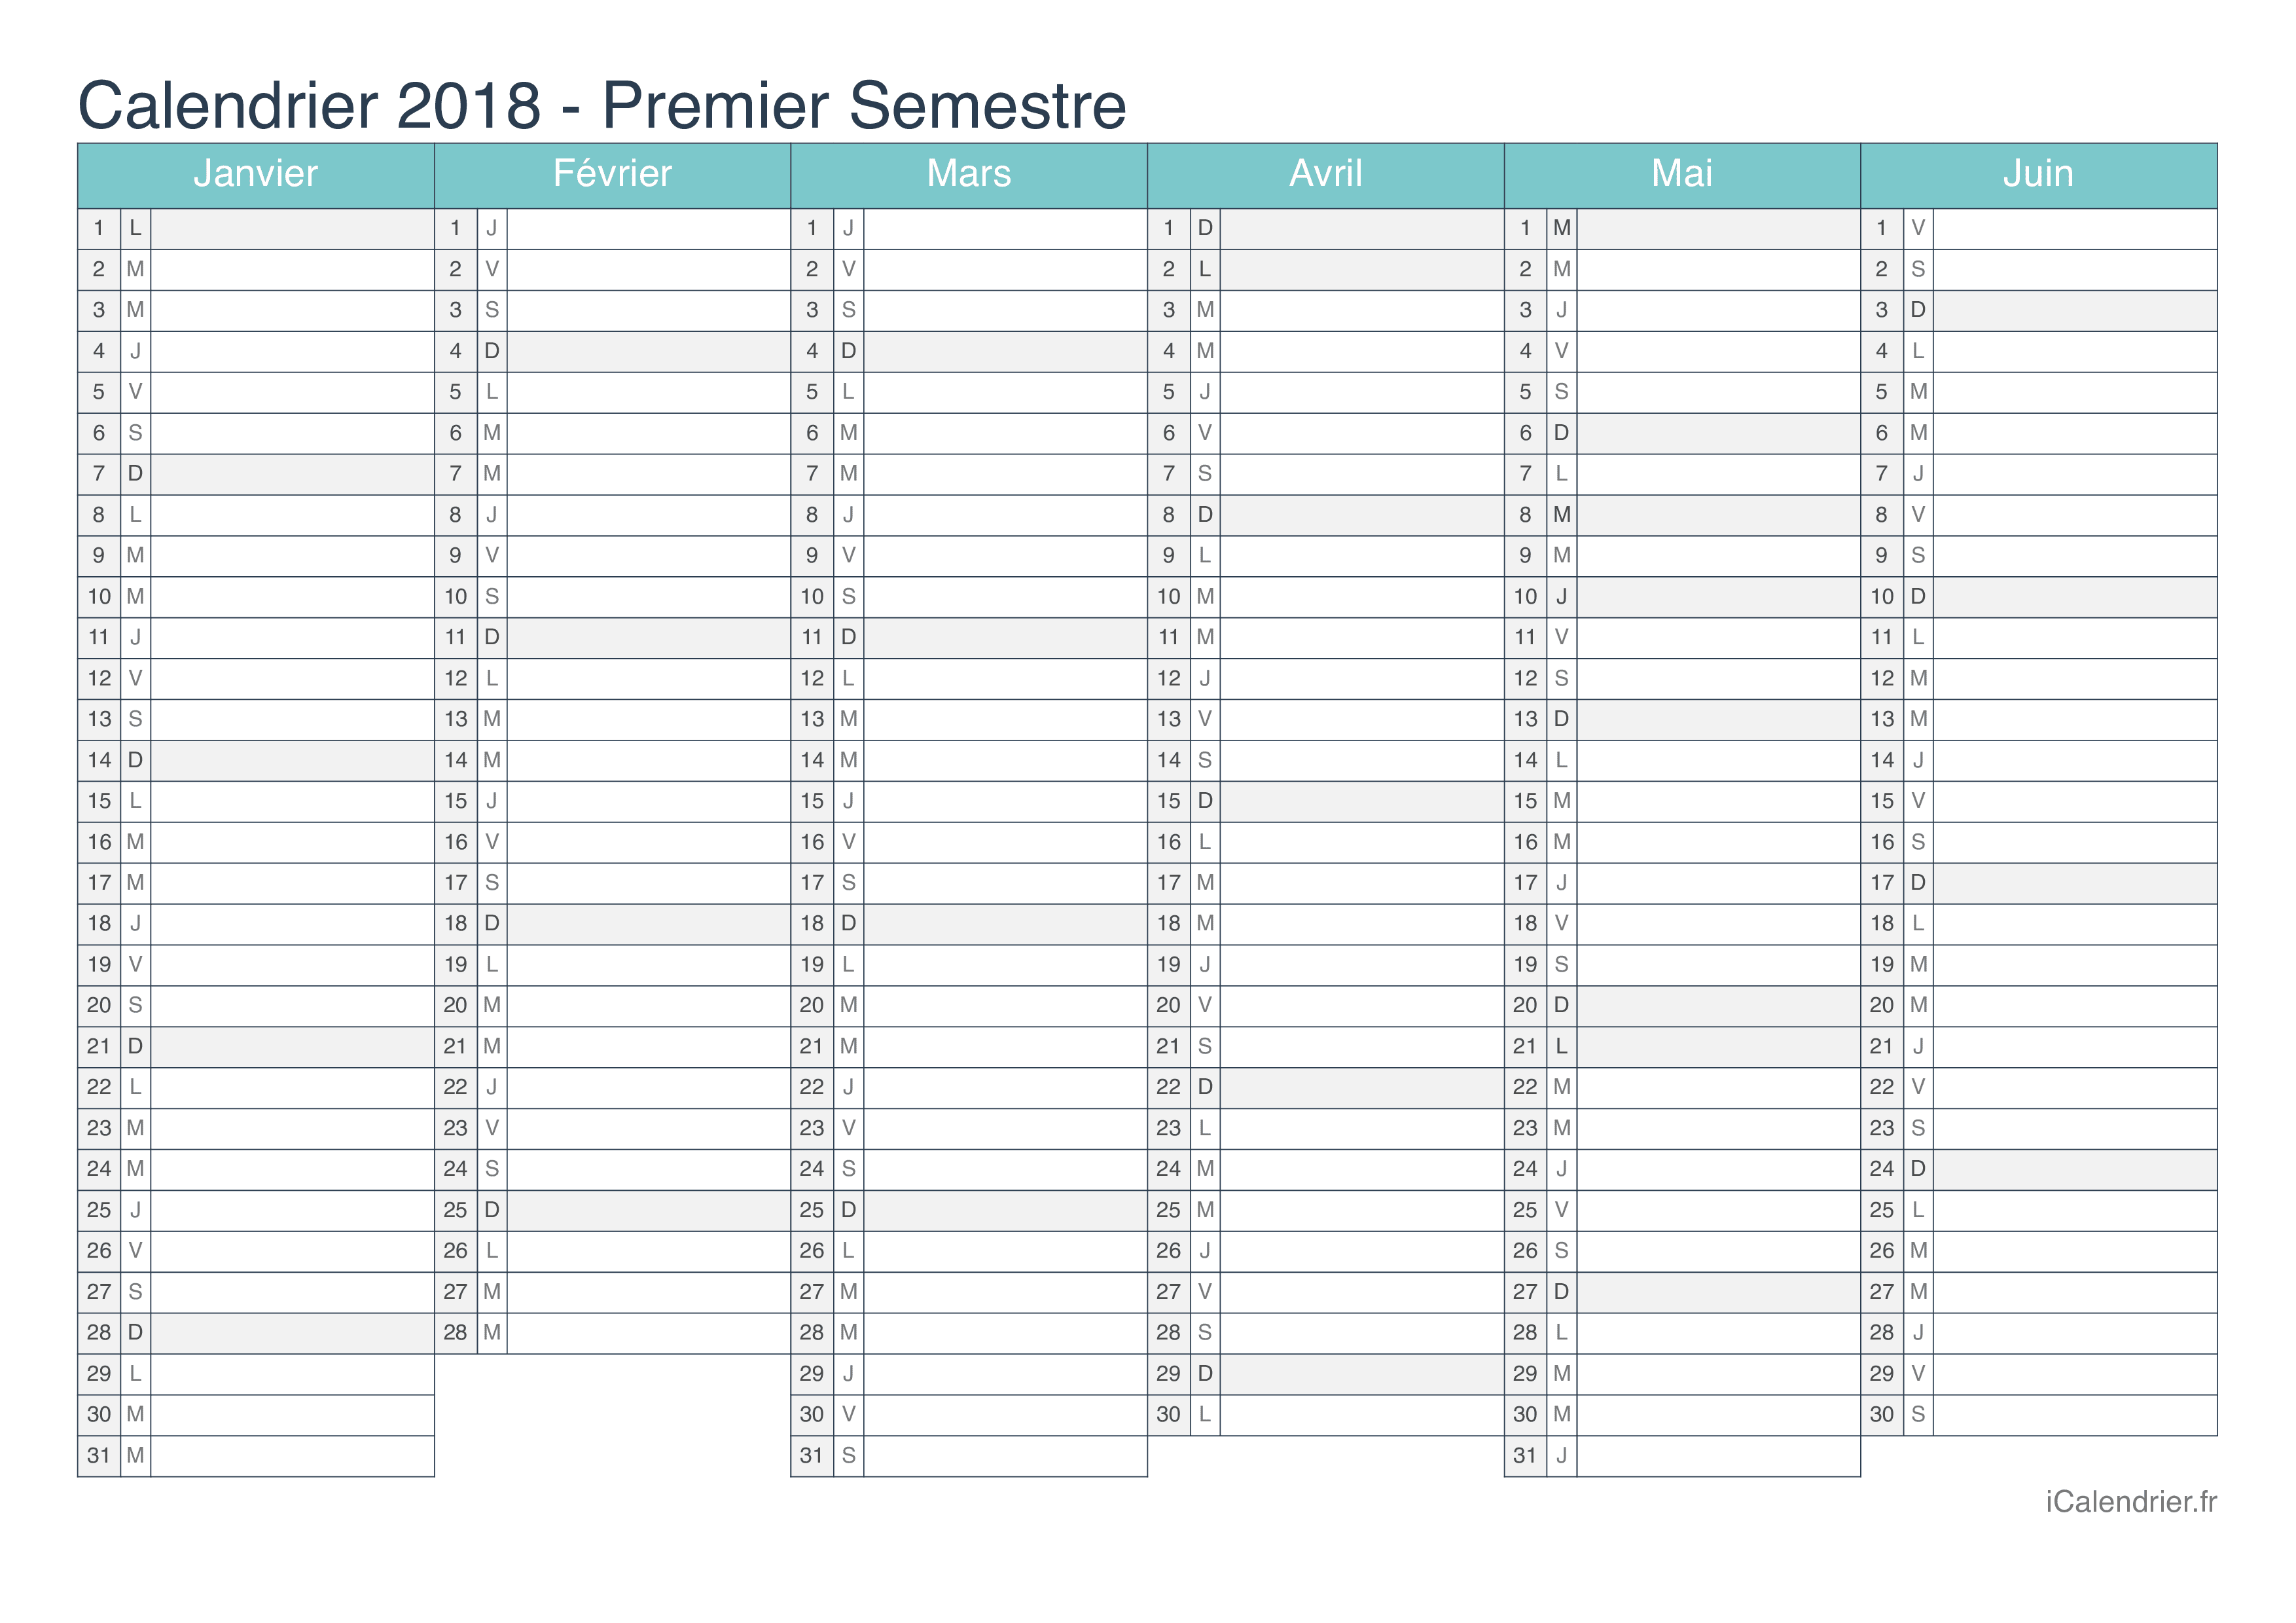 Calendrier par semestre 2018 - Turquoise